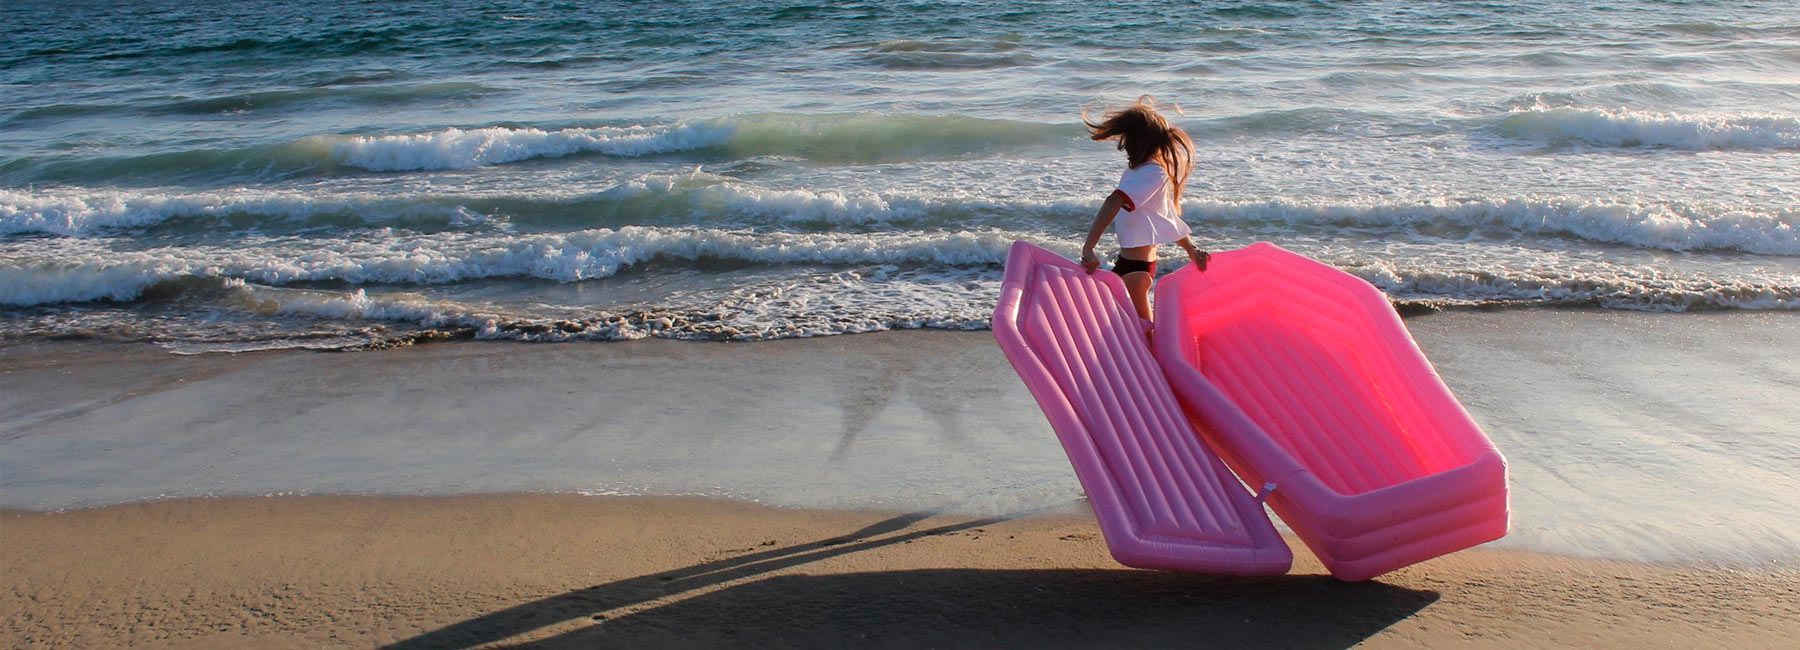 Водный матрас – розовый гроб. Самый необычный матрас для пляжа